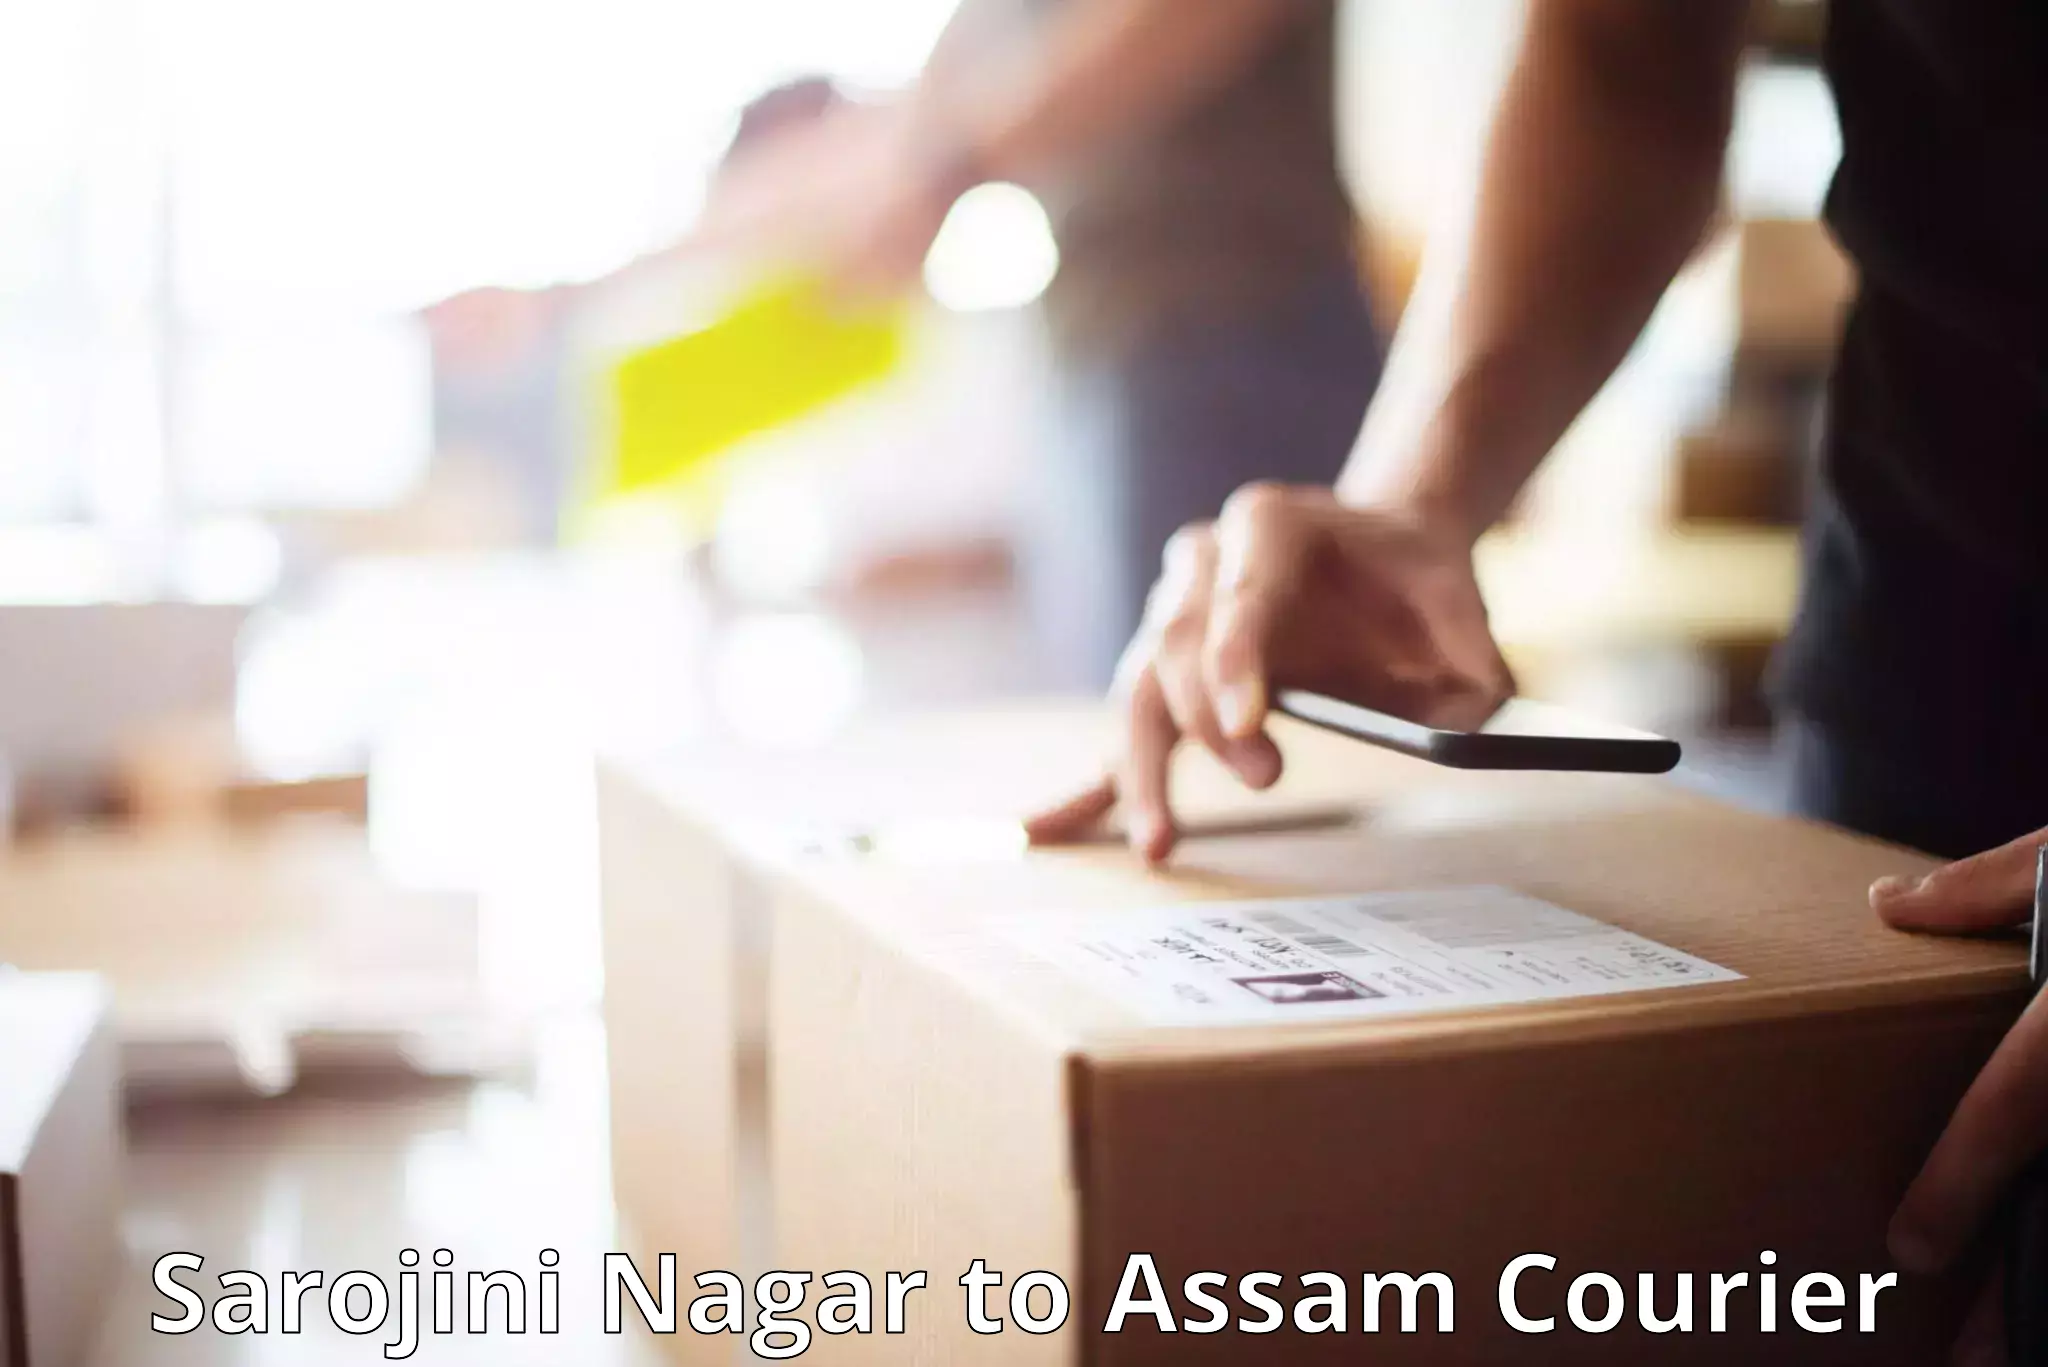 Baggage shipping advice Sarojini Nagar to Assam